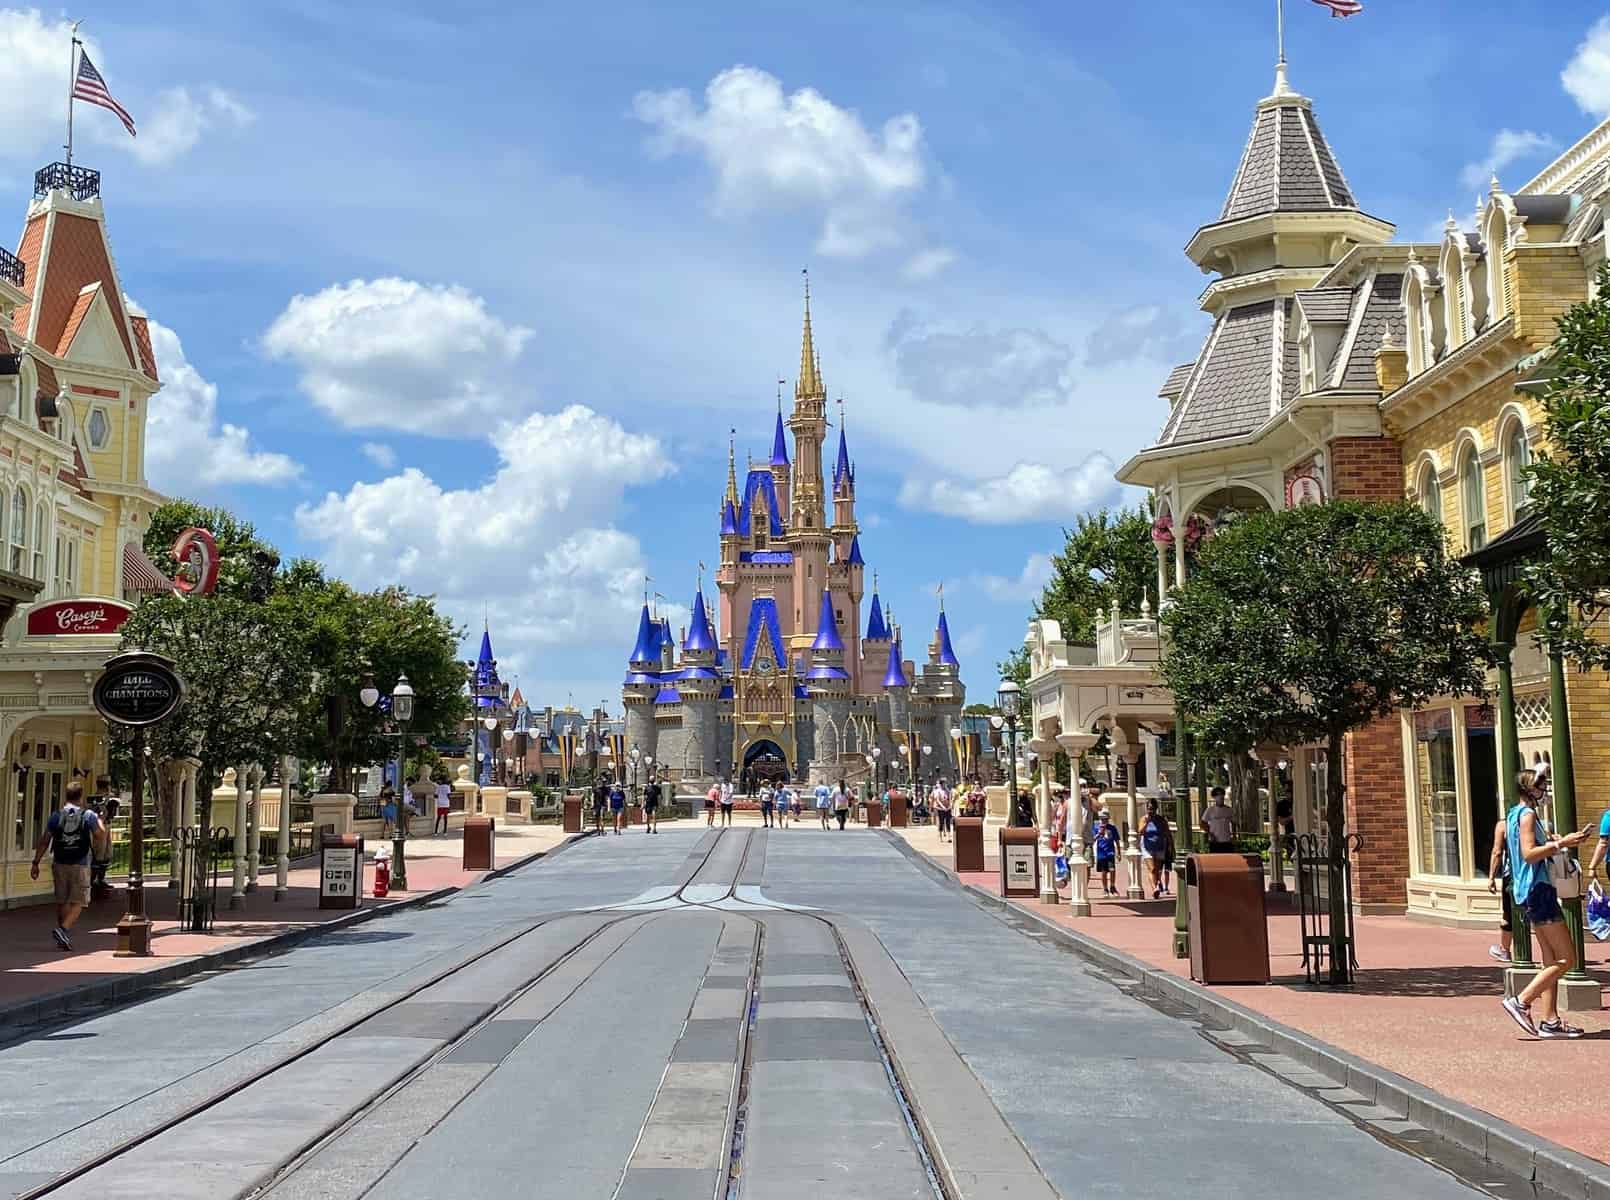 Does Disney World ever close?